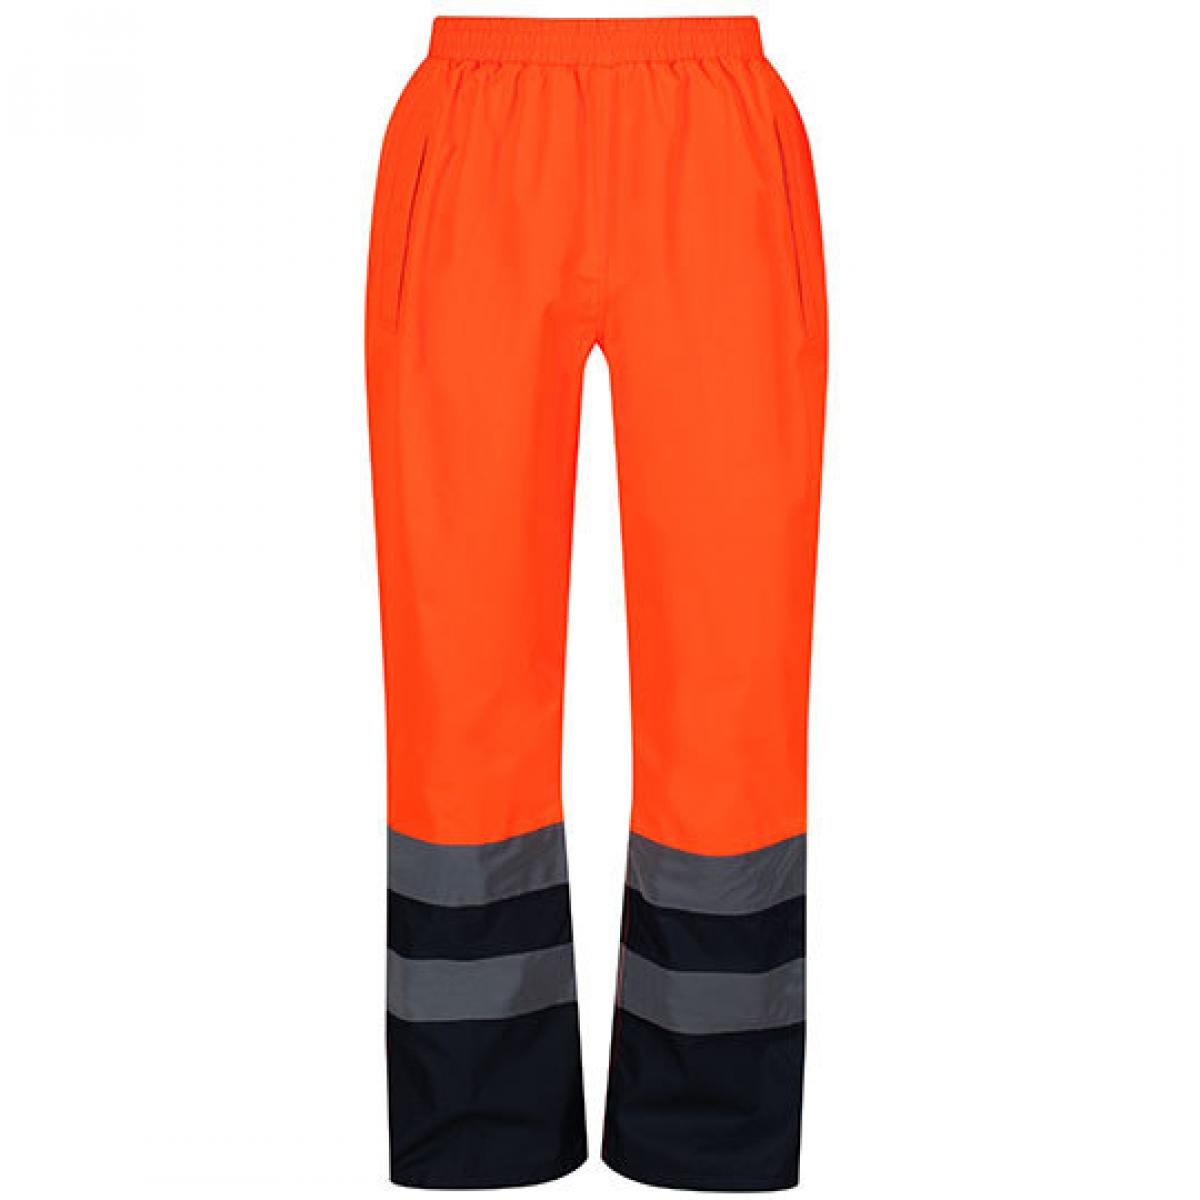 Hersteller: Regatta Herstellernummer: TRW505 Artikelbezeichnung: Herren Hi-Vis Pro Over Trousers nach EN 343 Klasse 3:3 Farbe: Orange/Navy